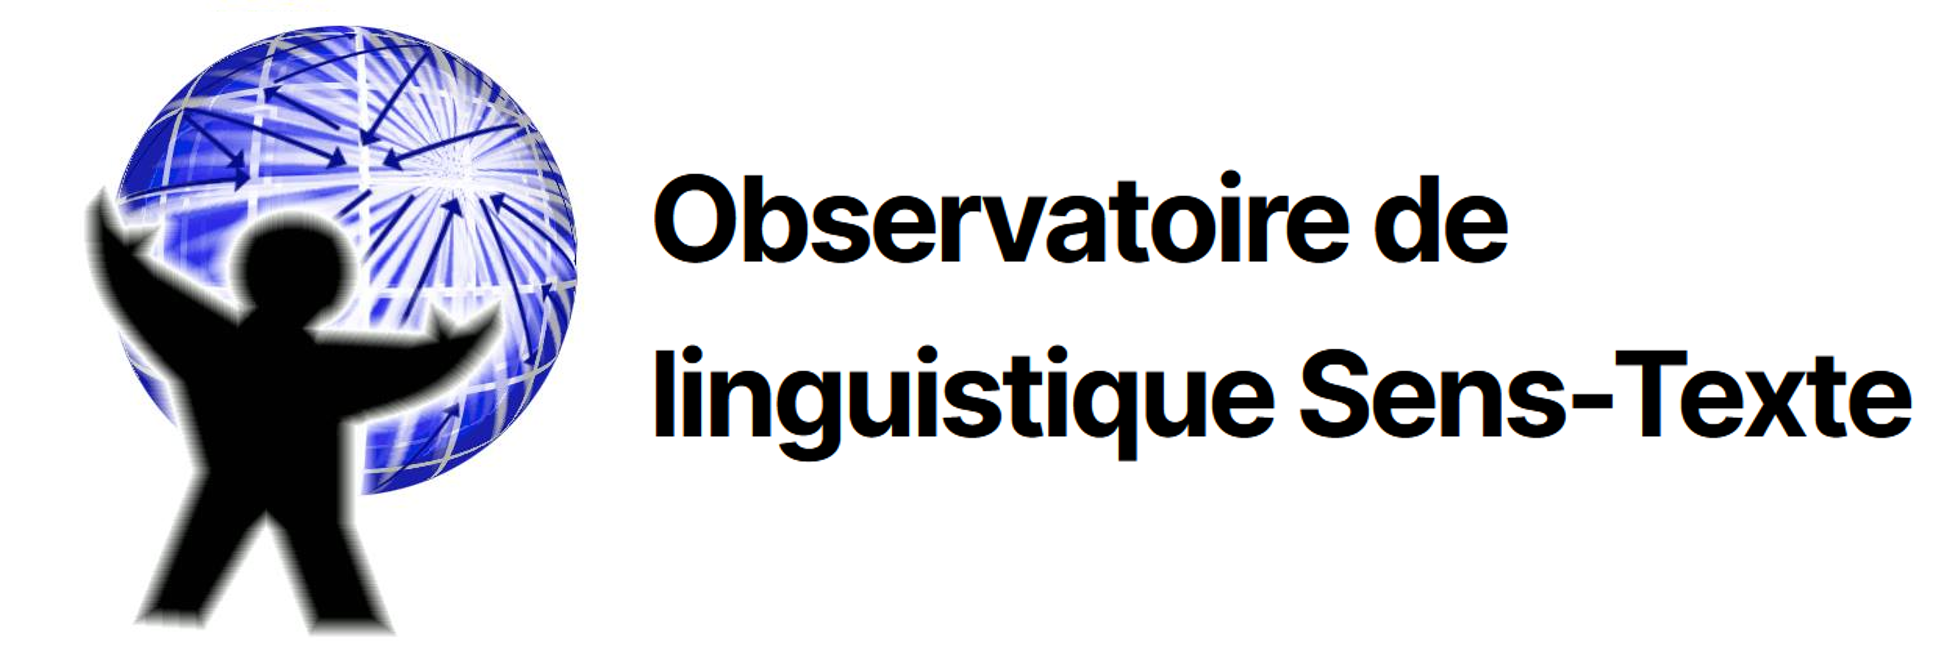 Observatoire de linguistique Sens-Texte (OLST)